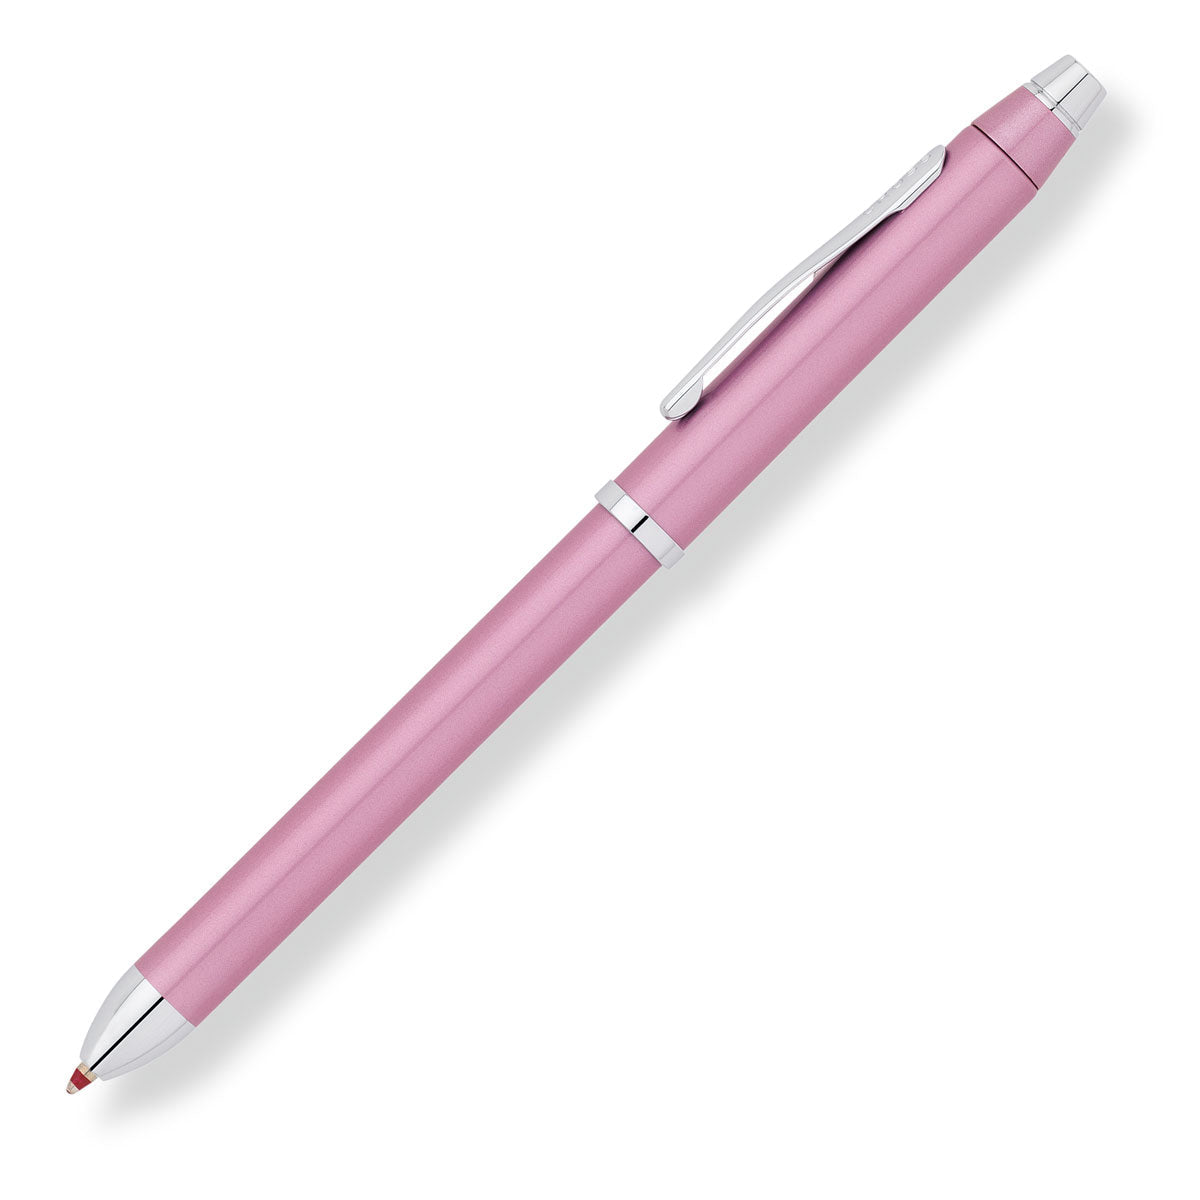 Rusteloos residentie Aanhankelijk Cross Tech3 Multifunction pen, Cross Pens Sale – Altman Luggage